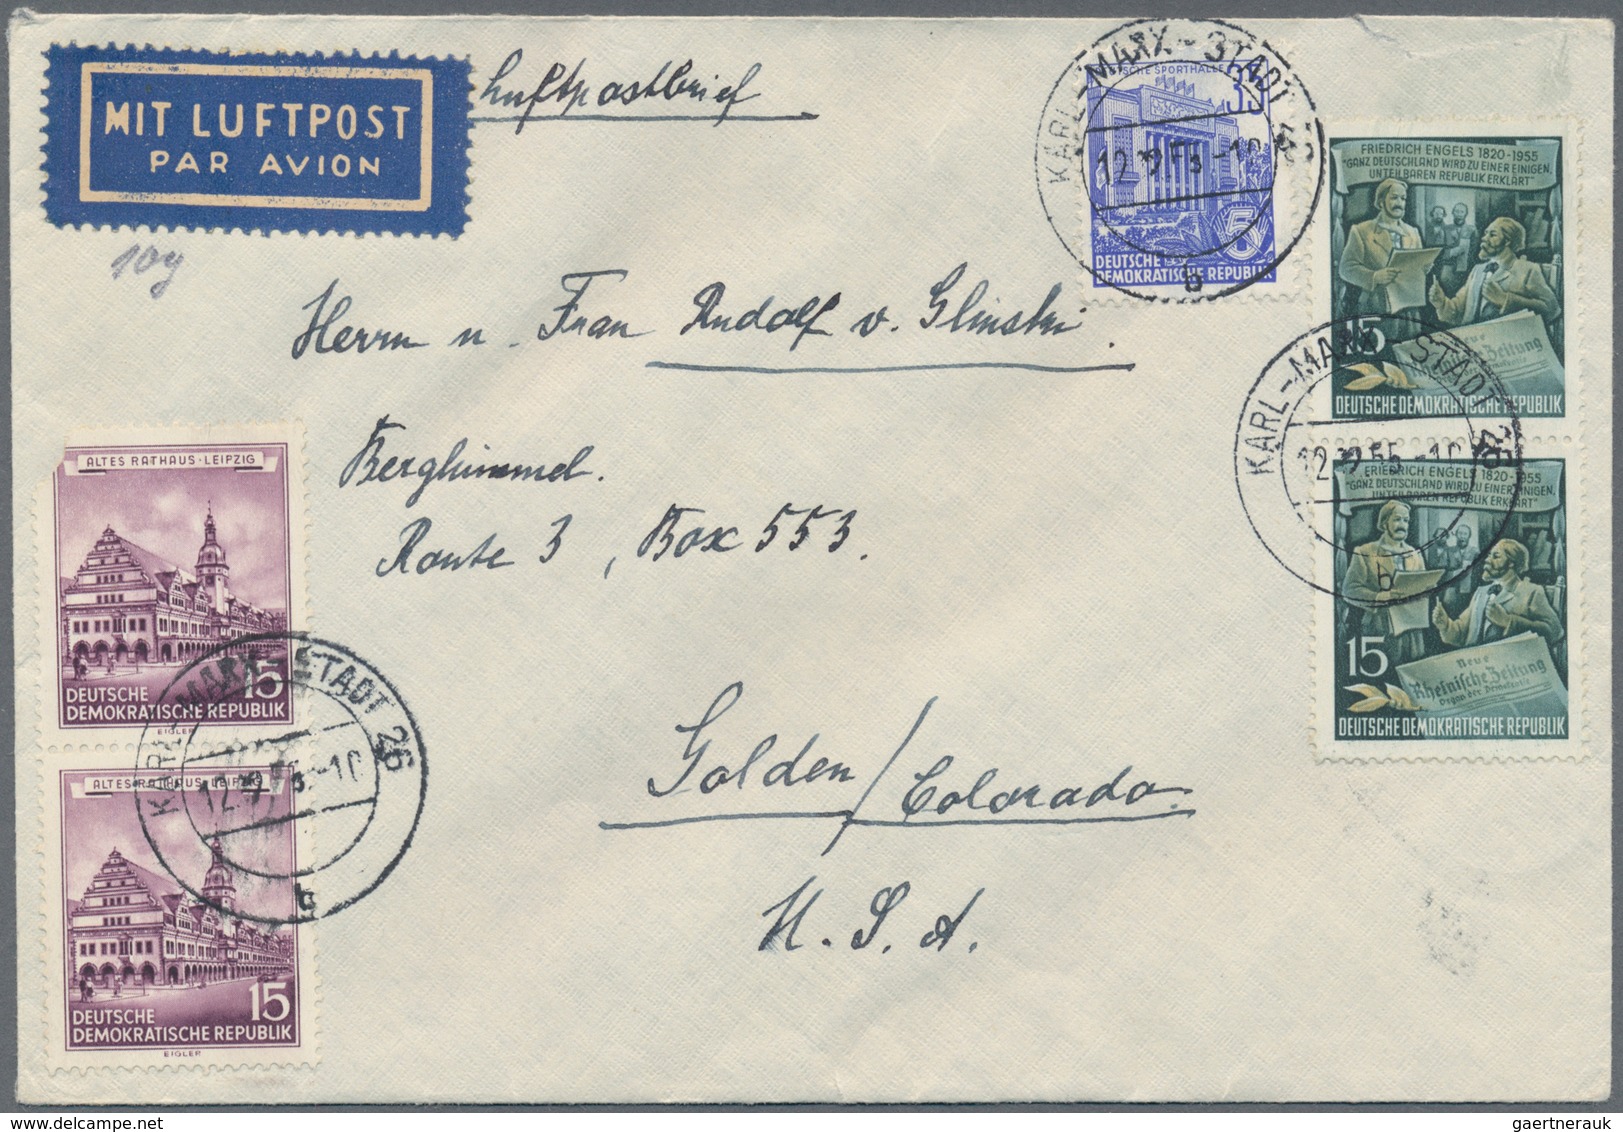 DDR: 1949/1961, vielseitiger Posten von ca. 380 Briefen und Karten aus alter Familien-Korrespondenz,